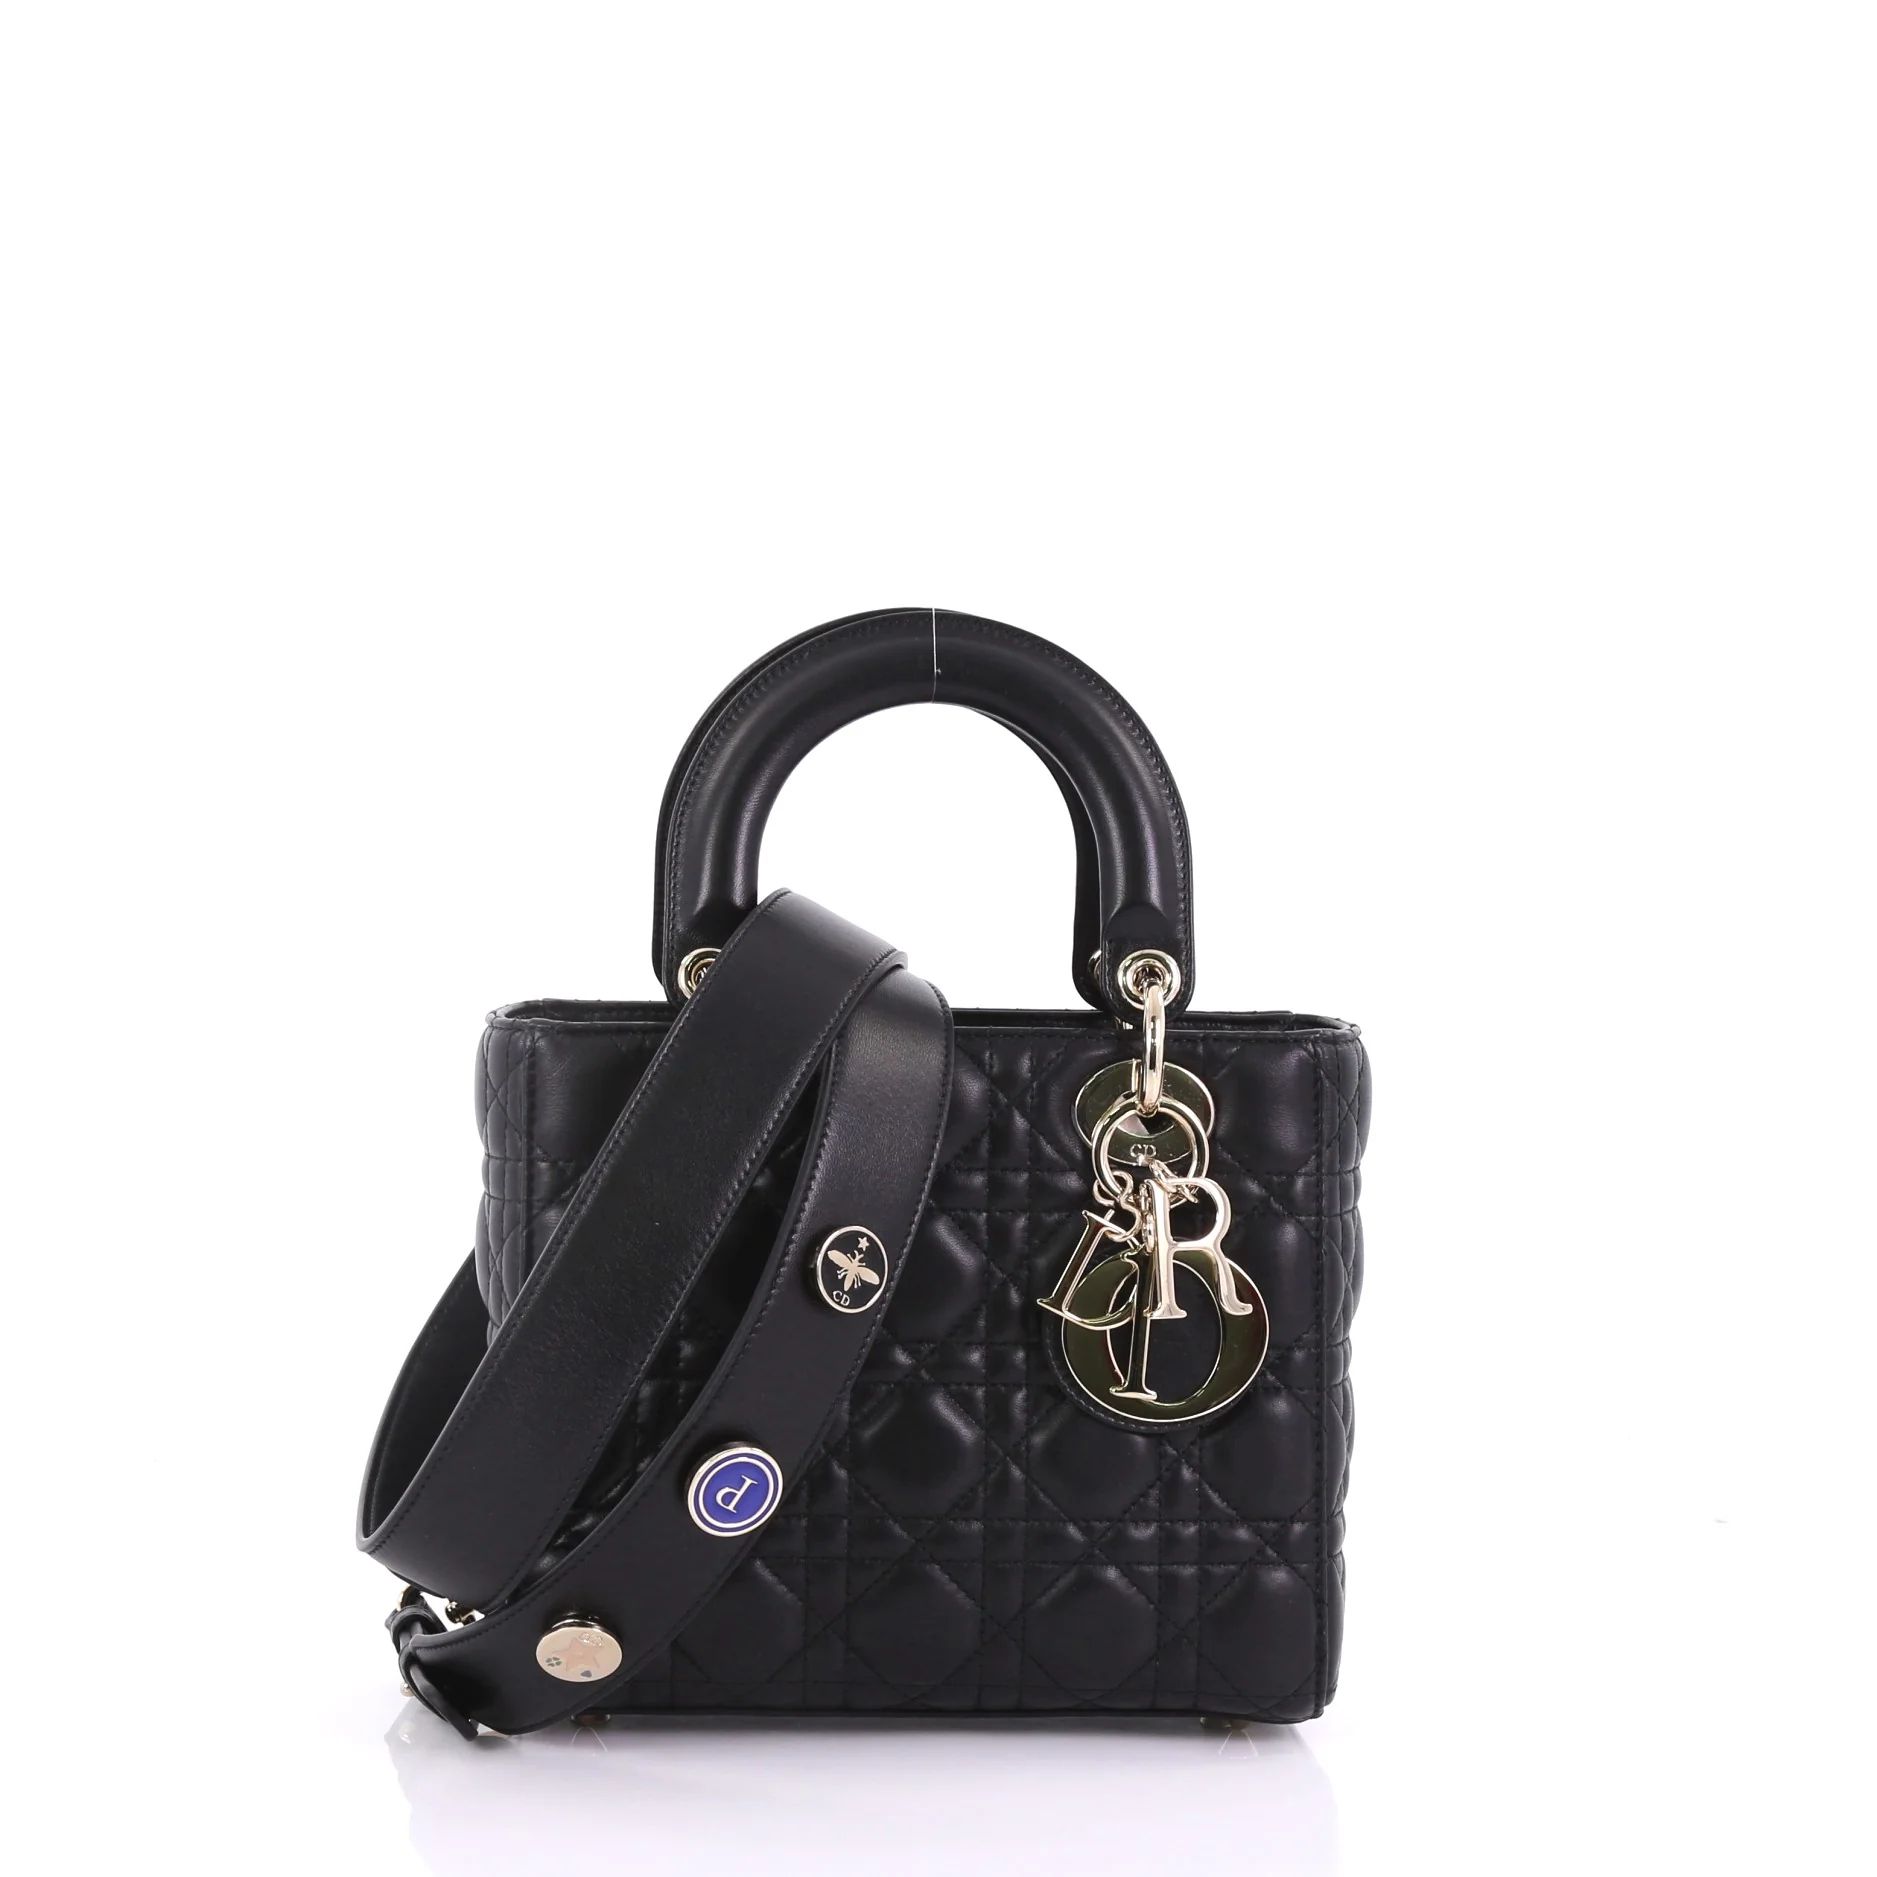 My Lady Dior Handbag Cannage Quilt Lambskin - My Lady Dior Handbag Cannage Quilt Lambskin / black | Rebag